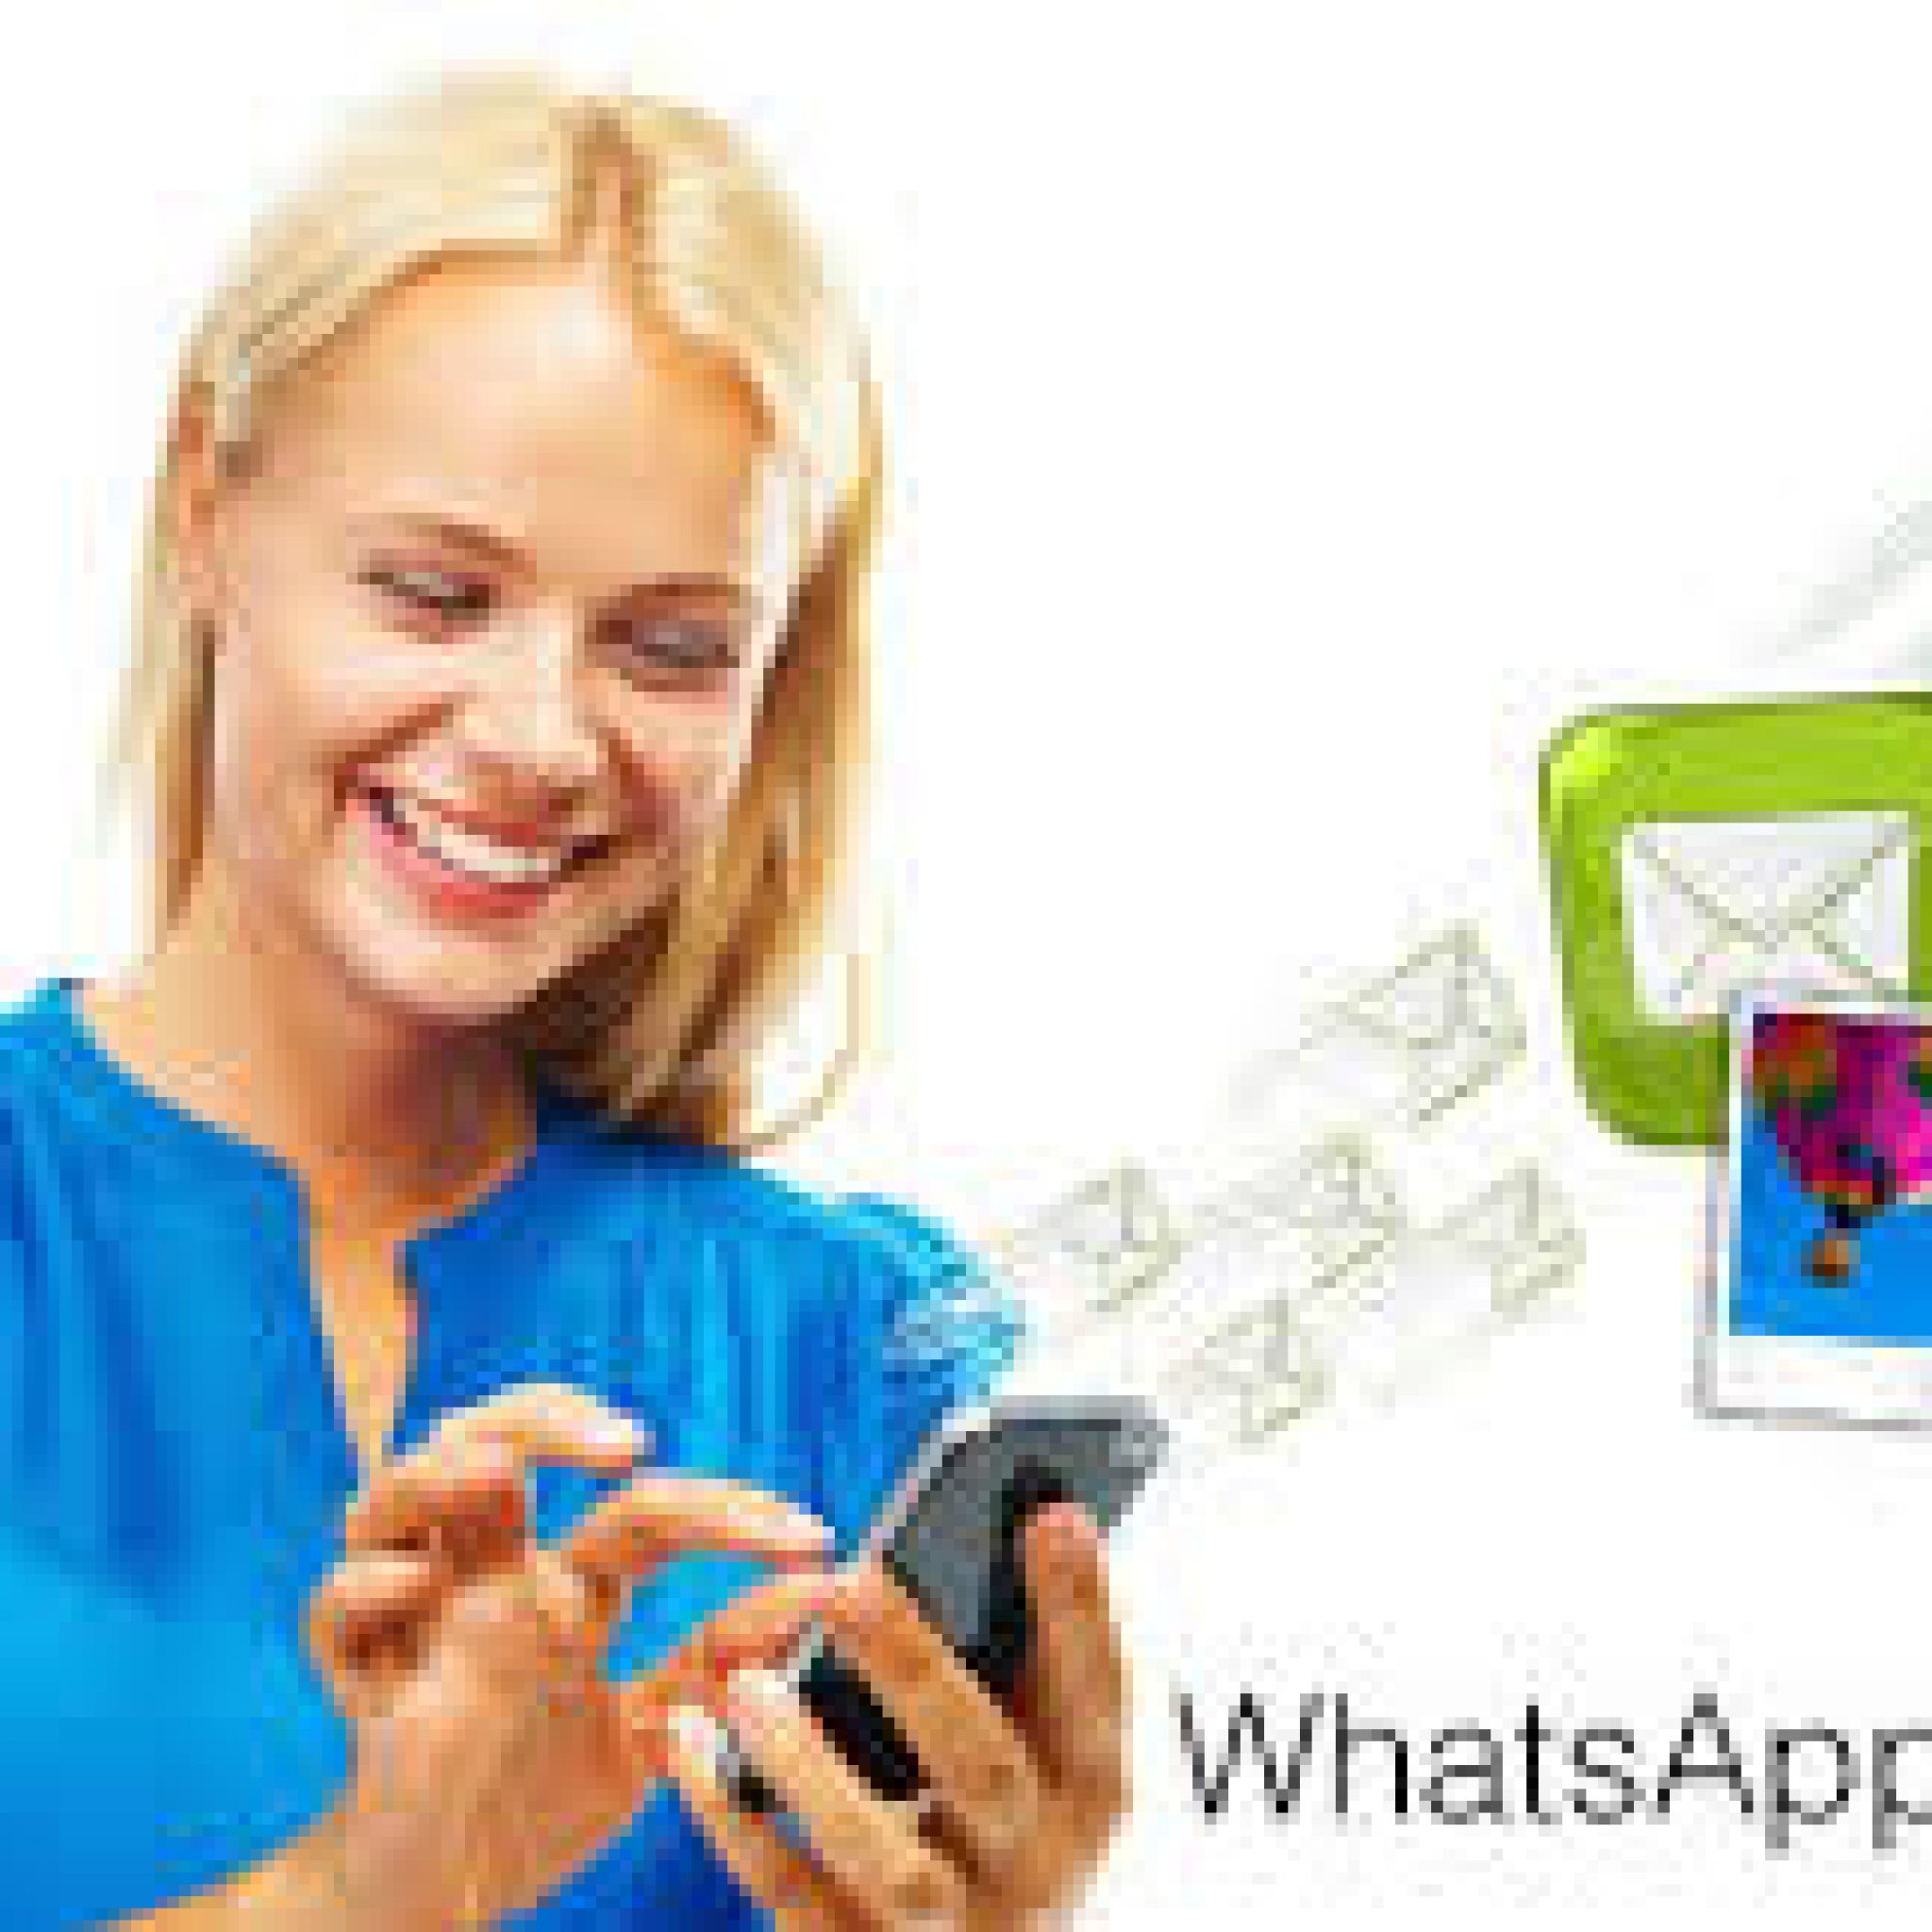 Whatsapp Prepara Incluir Publicidad